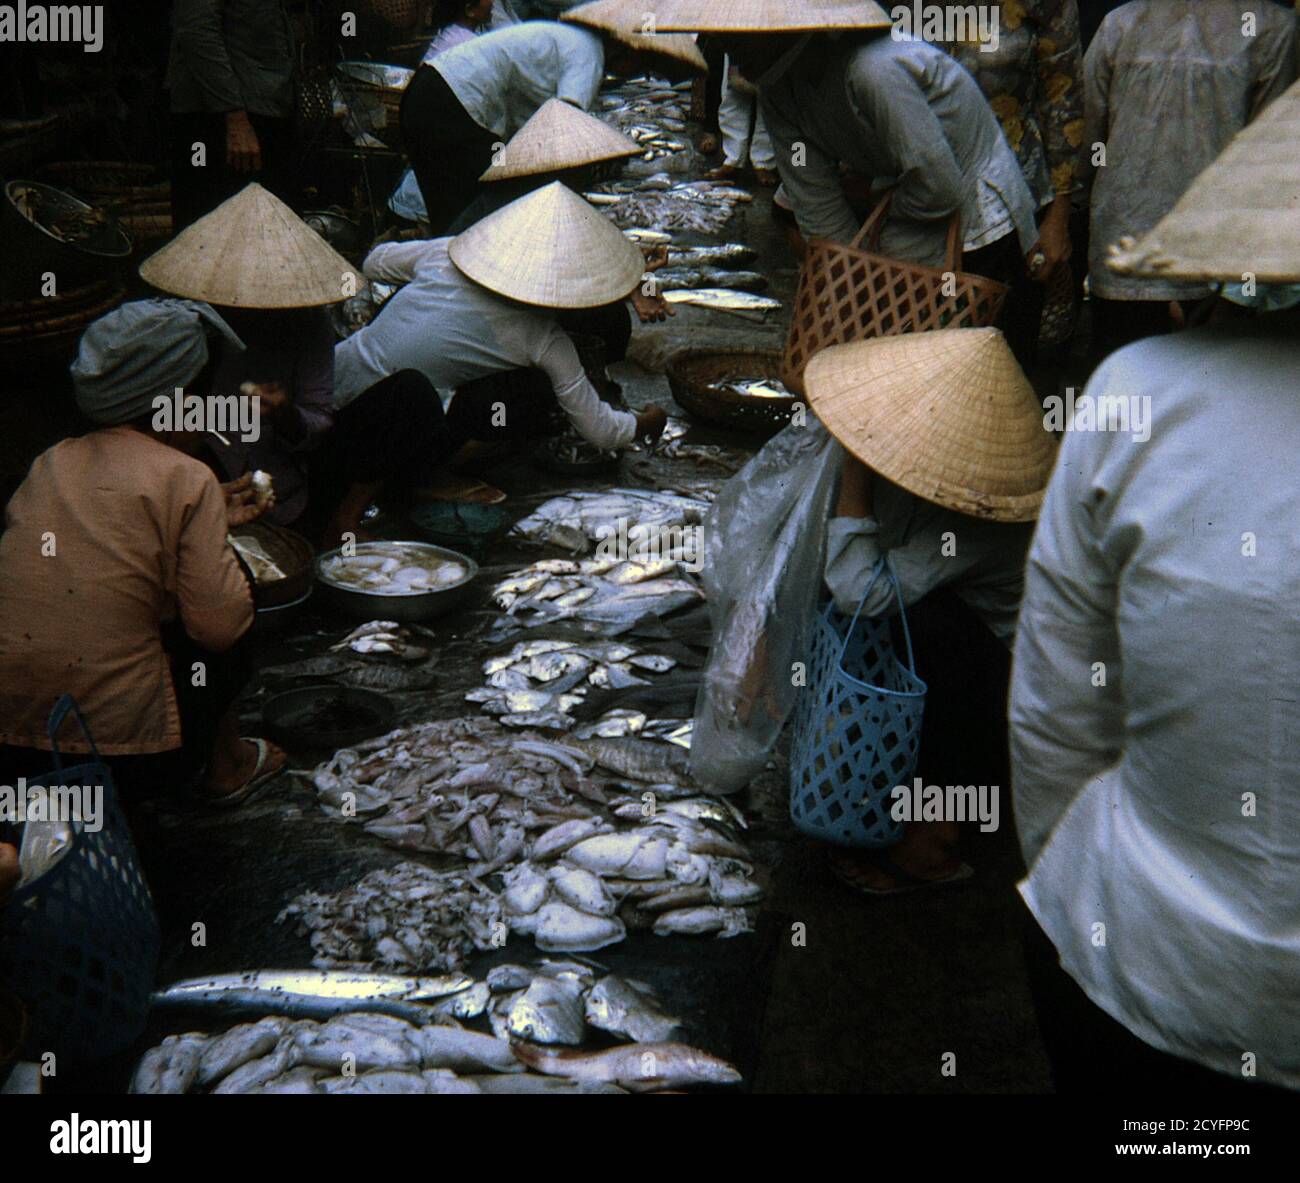 USA Vietnam-Krieg / Vietnam War - Vung Tau Market Place Stock Photo